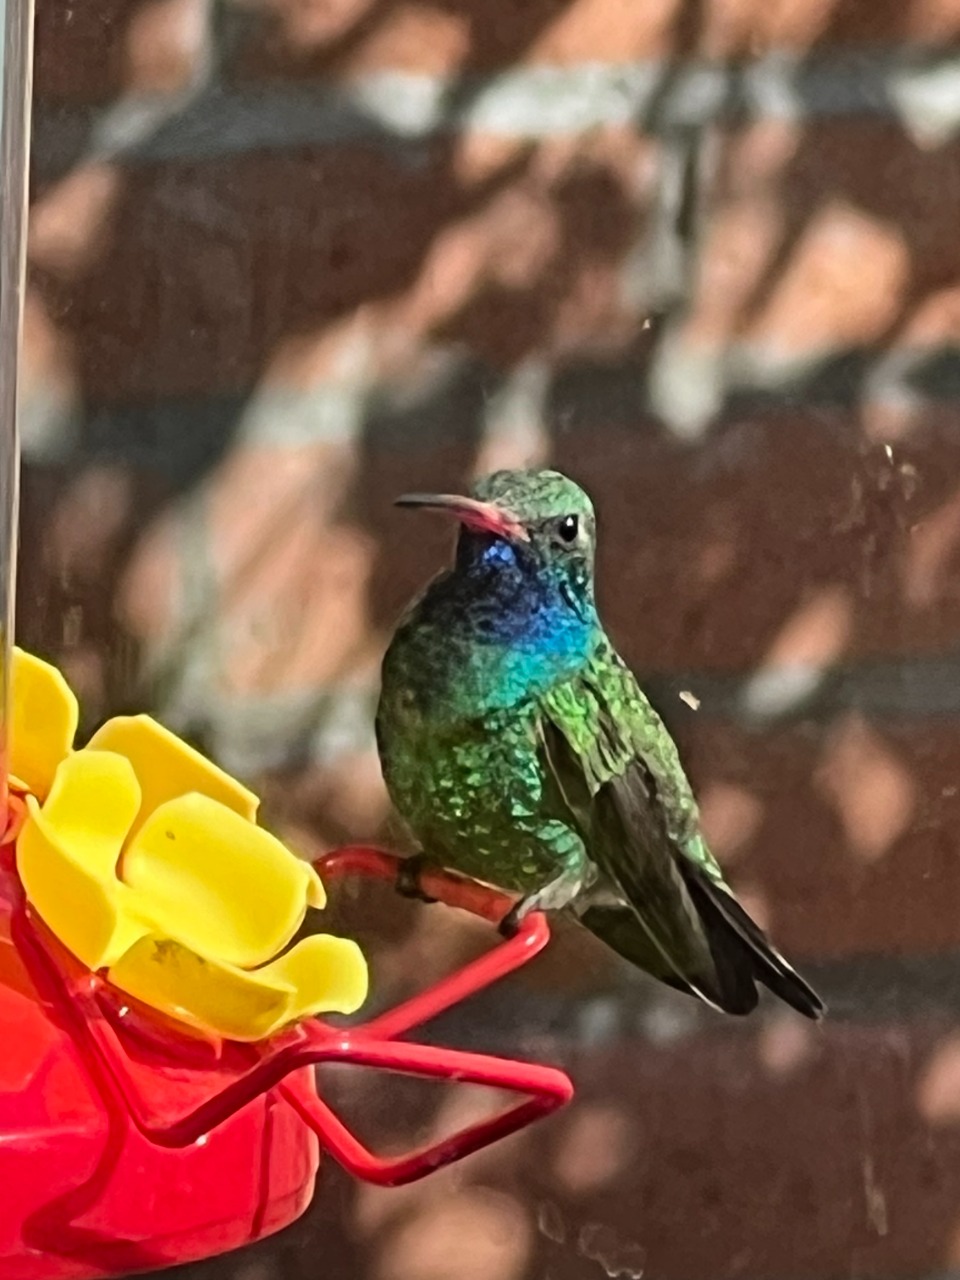 broadbilled hummingbird at bird feeder 